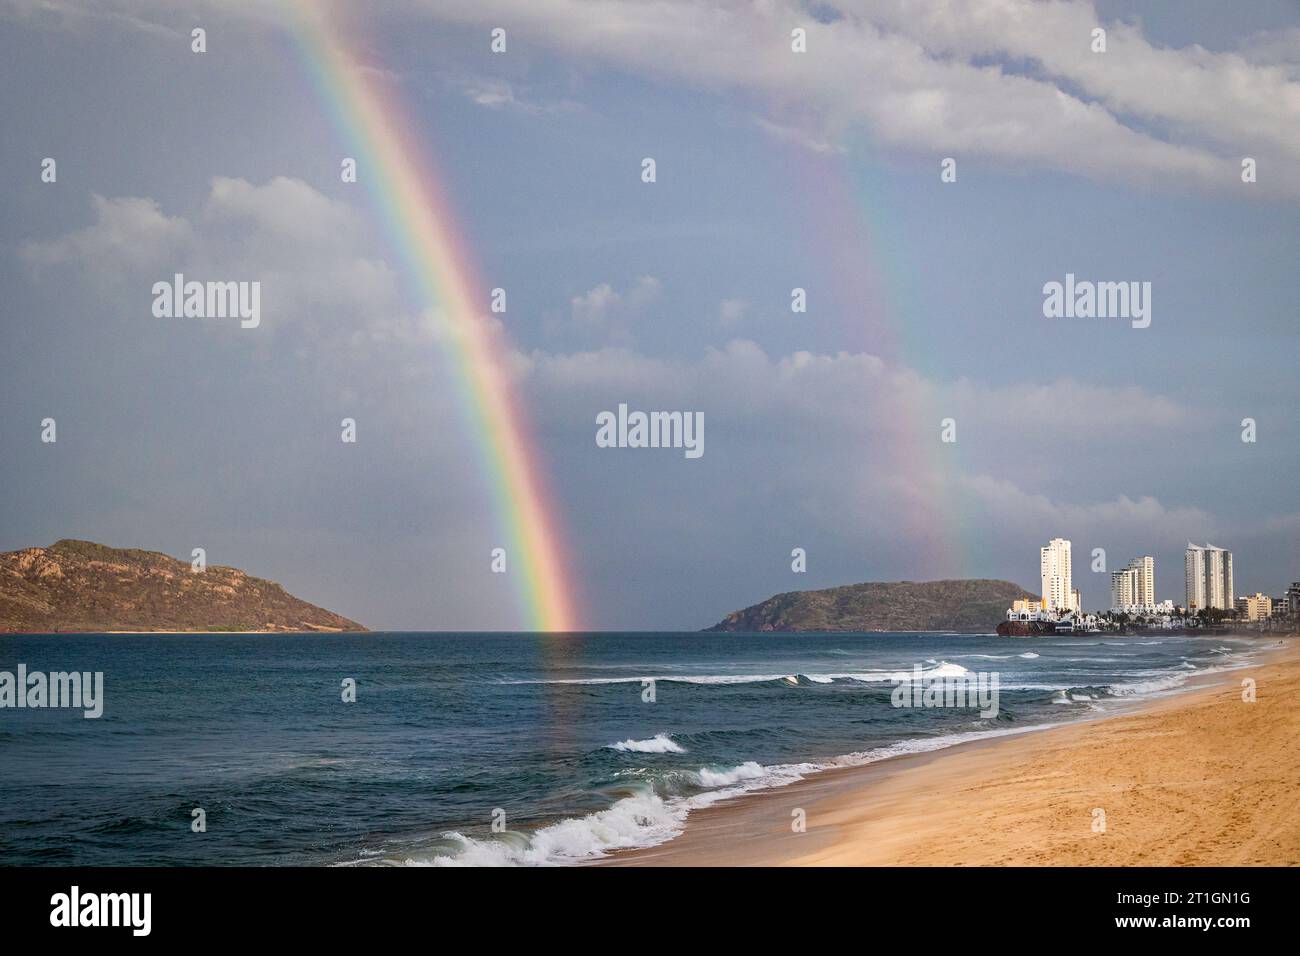 A double rainbow over the Pacific Ocean in Mazatlan, Sinaloa, Mexico. Stock Photo